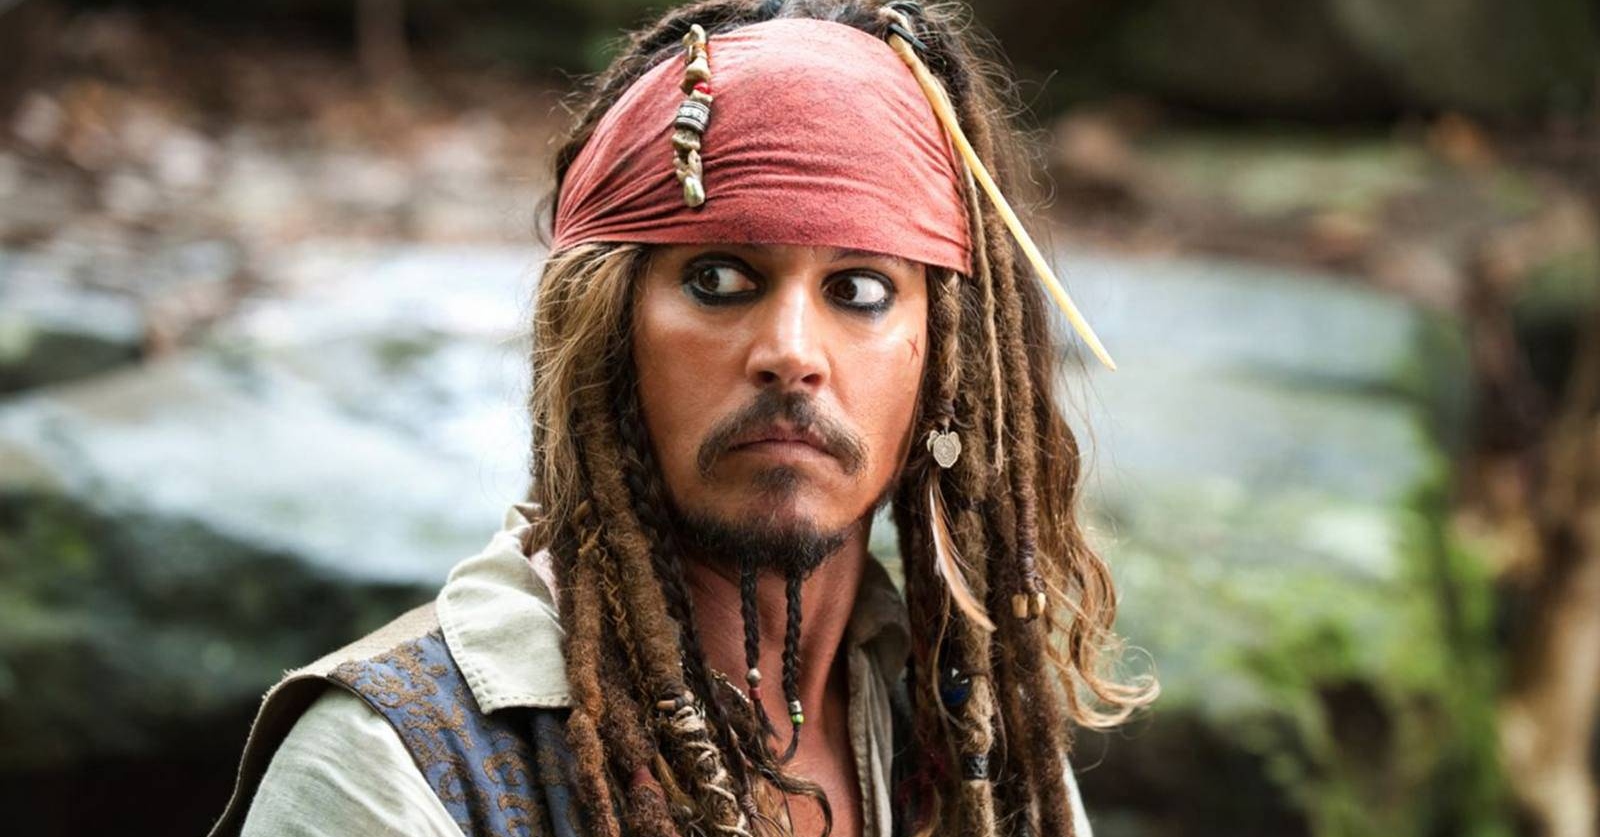 Será que veremos Depp como Jack Sparrow novamente? - Foto: Reprodução